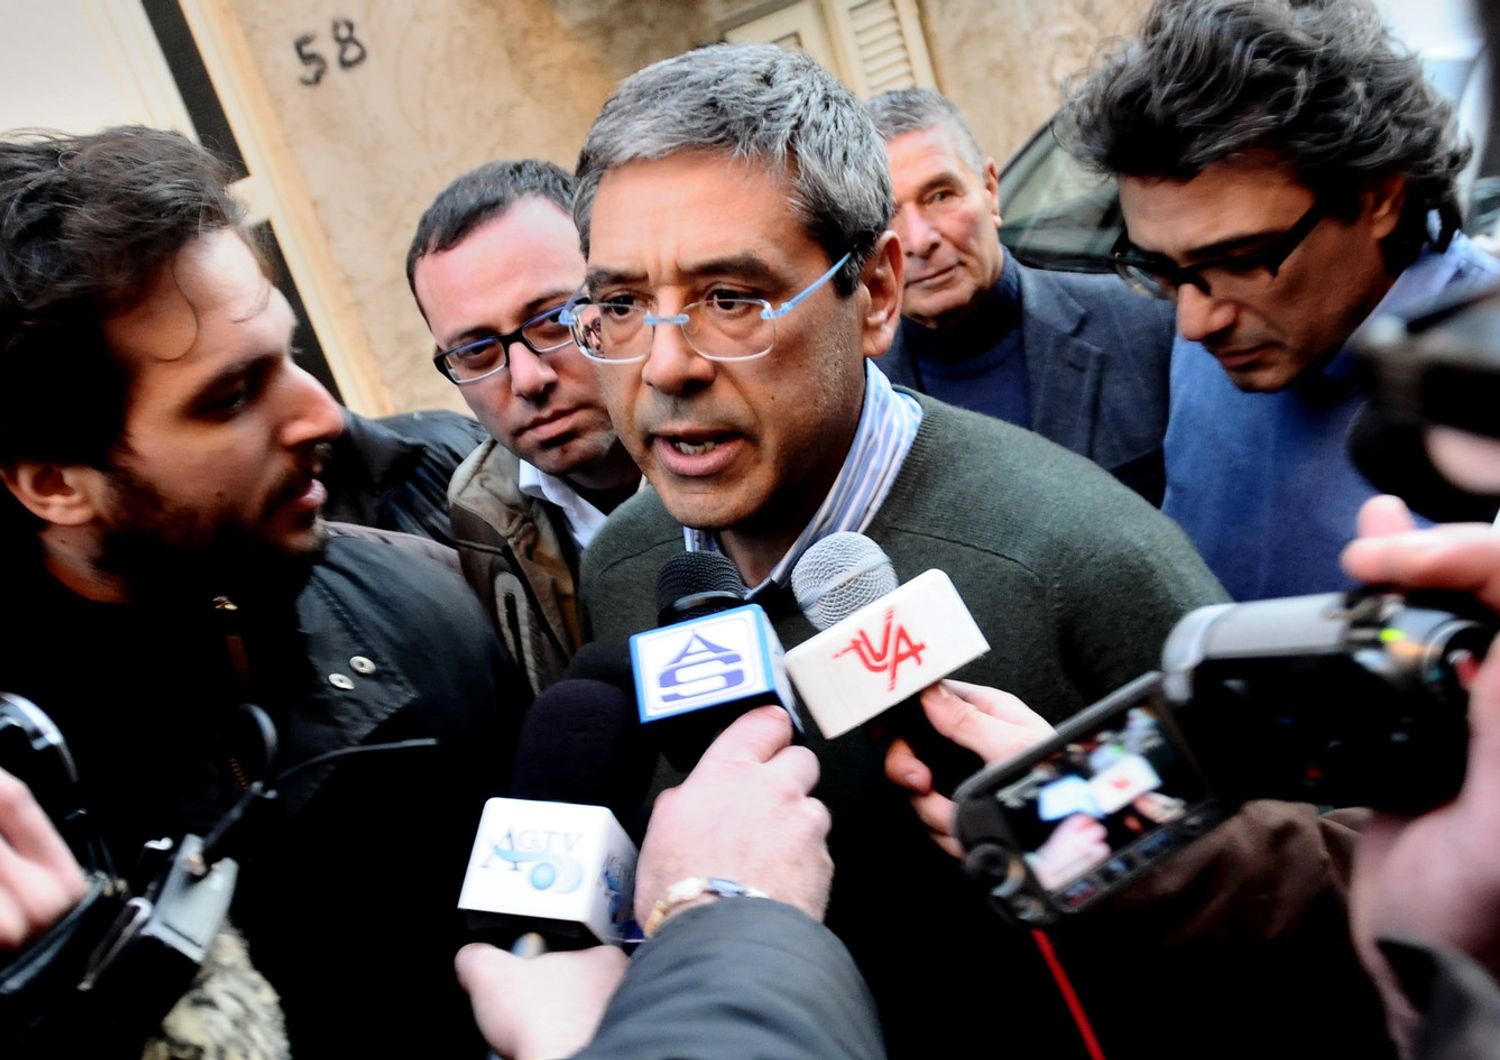 Tot&ograve; Cuffaro, ex presidente della Regione Sicilia, in una imagine del 2013